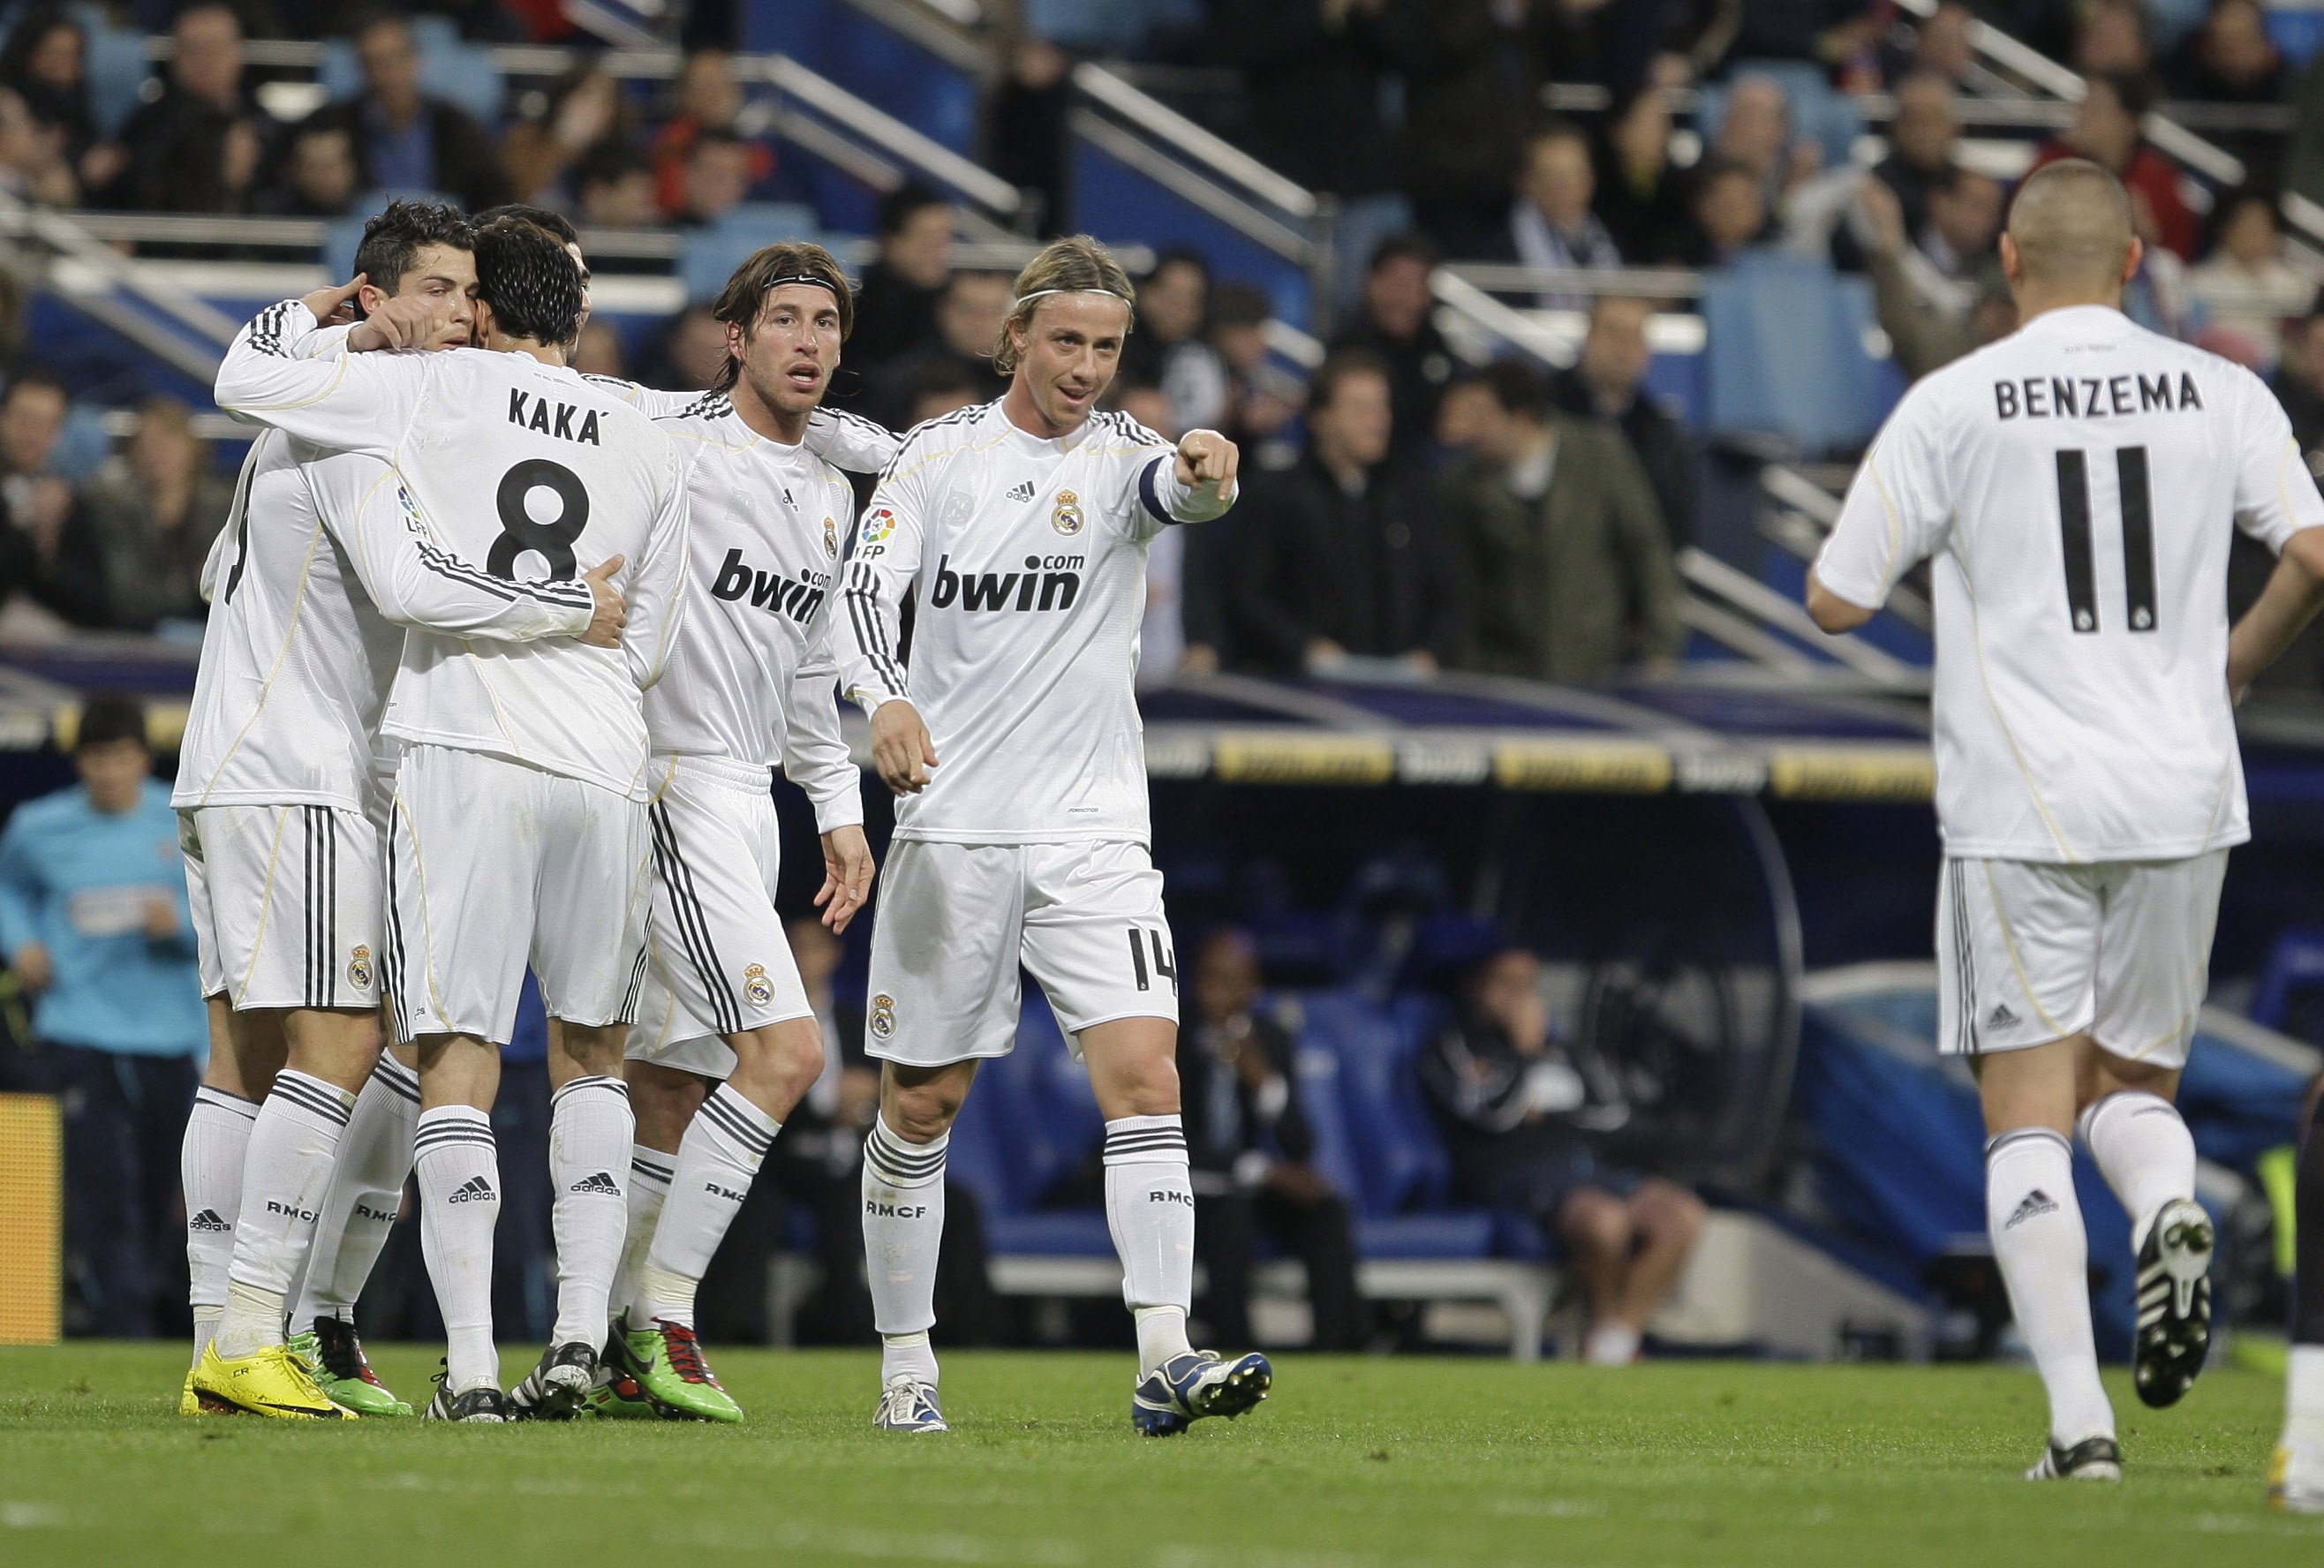 Real Madrid, Patrick Mtiliga, Cristiano Ronaldo, Malaga, La Liga